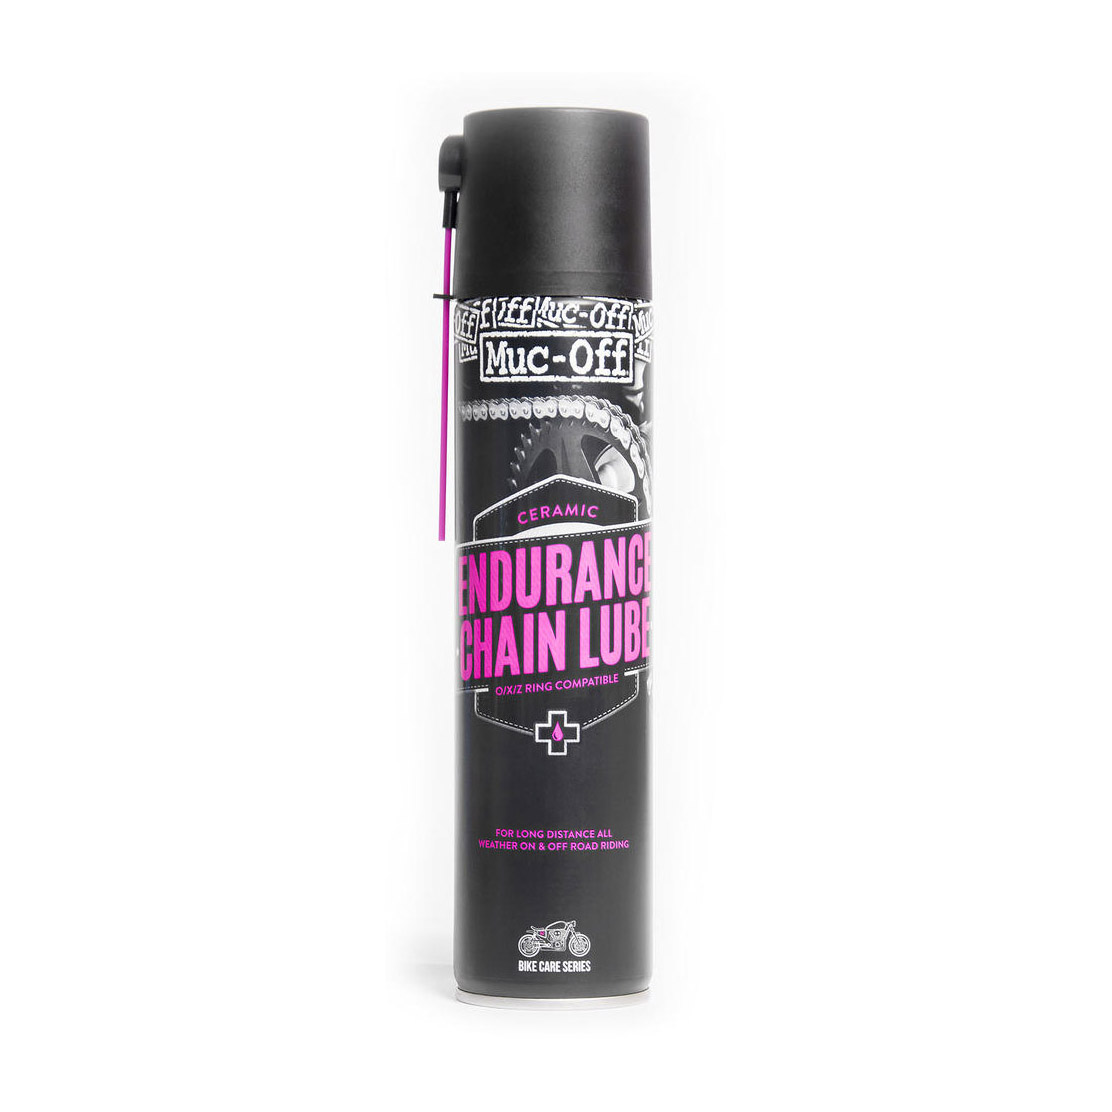 Muc-Off Endurance Chain Lube Spray, 400ml